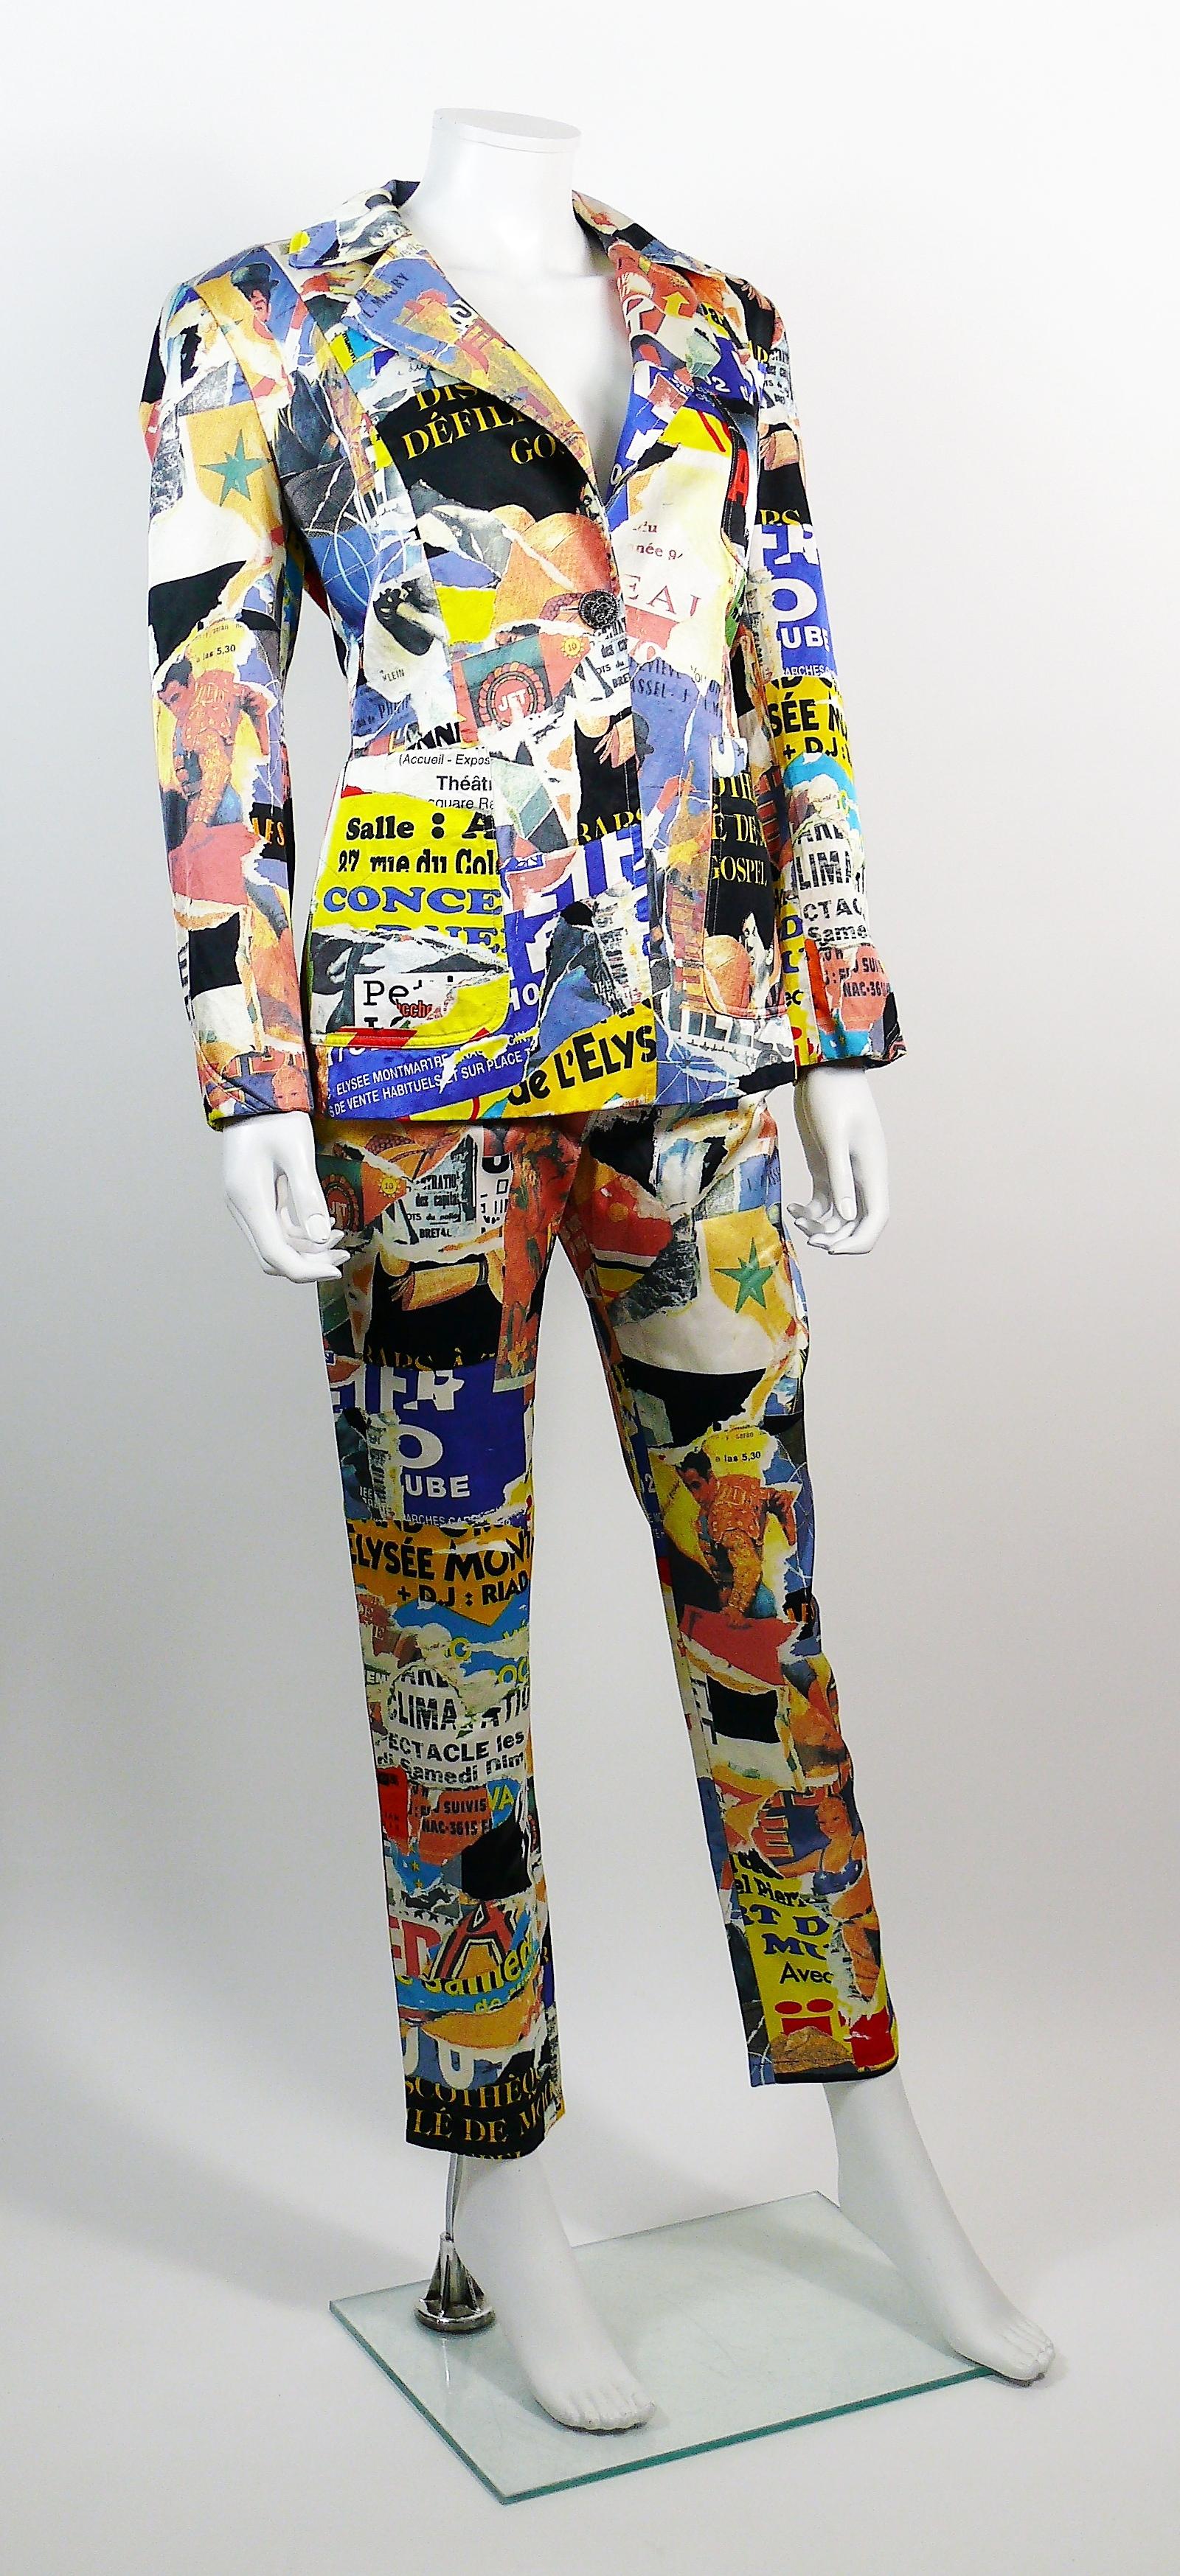 Ensemble blazer et pantalon Pop Art vintage rare et coloré CHRISTIAN LACROIX avec une impression rétro lacérée sur toute la surface dans des couleurs vibrantes.

L'étiquette indique BAZAR de CHRISTIAN LACROIX.
Fabriqué en France.

BLAZER
Etiquette